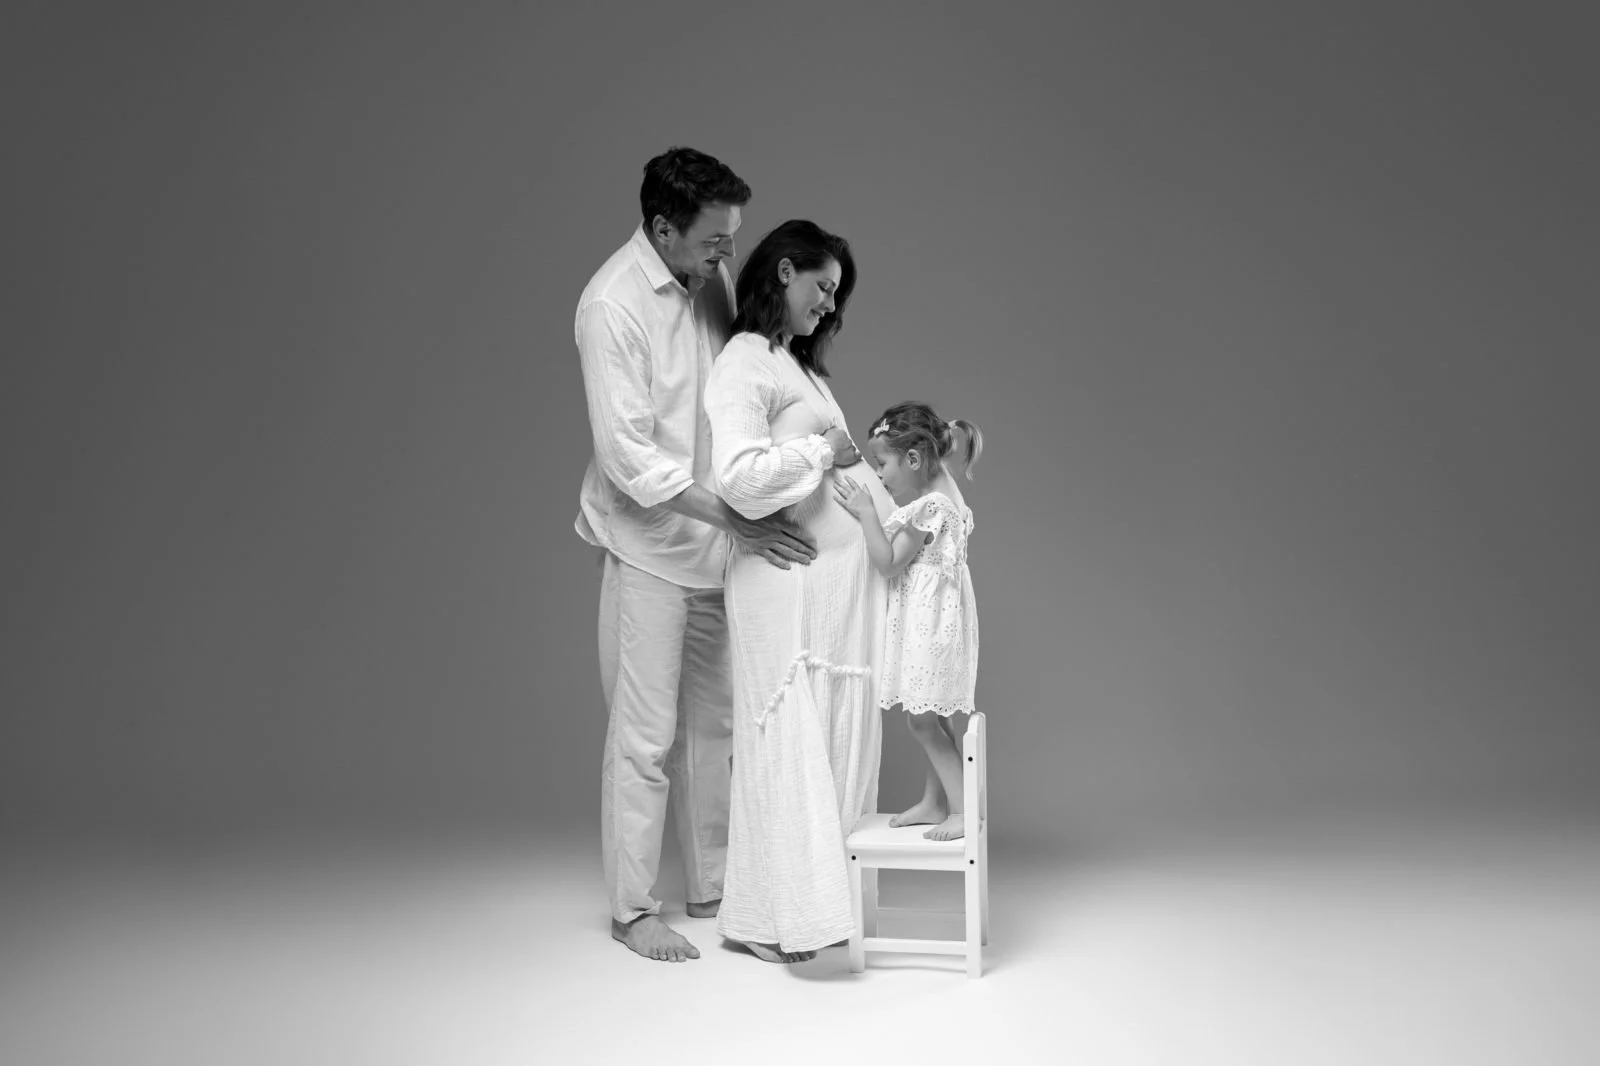 Družina treh v črno-beli fotografiji. Oblečeni so v bela oblačila. Oče drži mamo v naročju, hčerka pa stoji na belem stolčku.